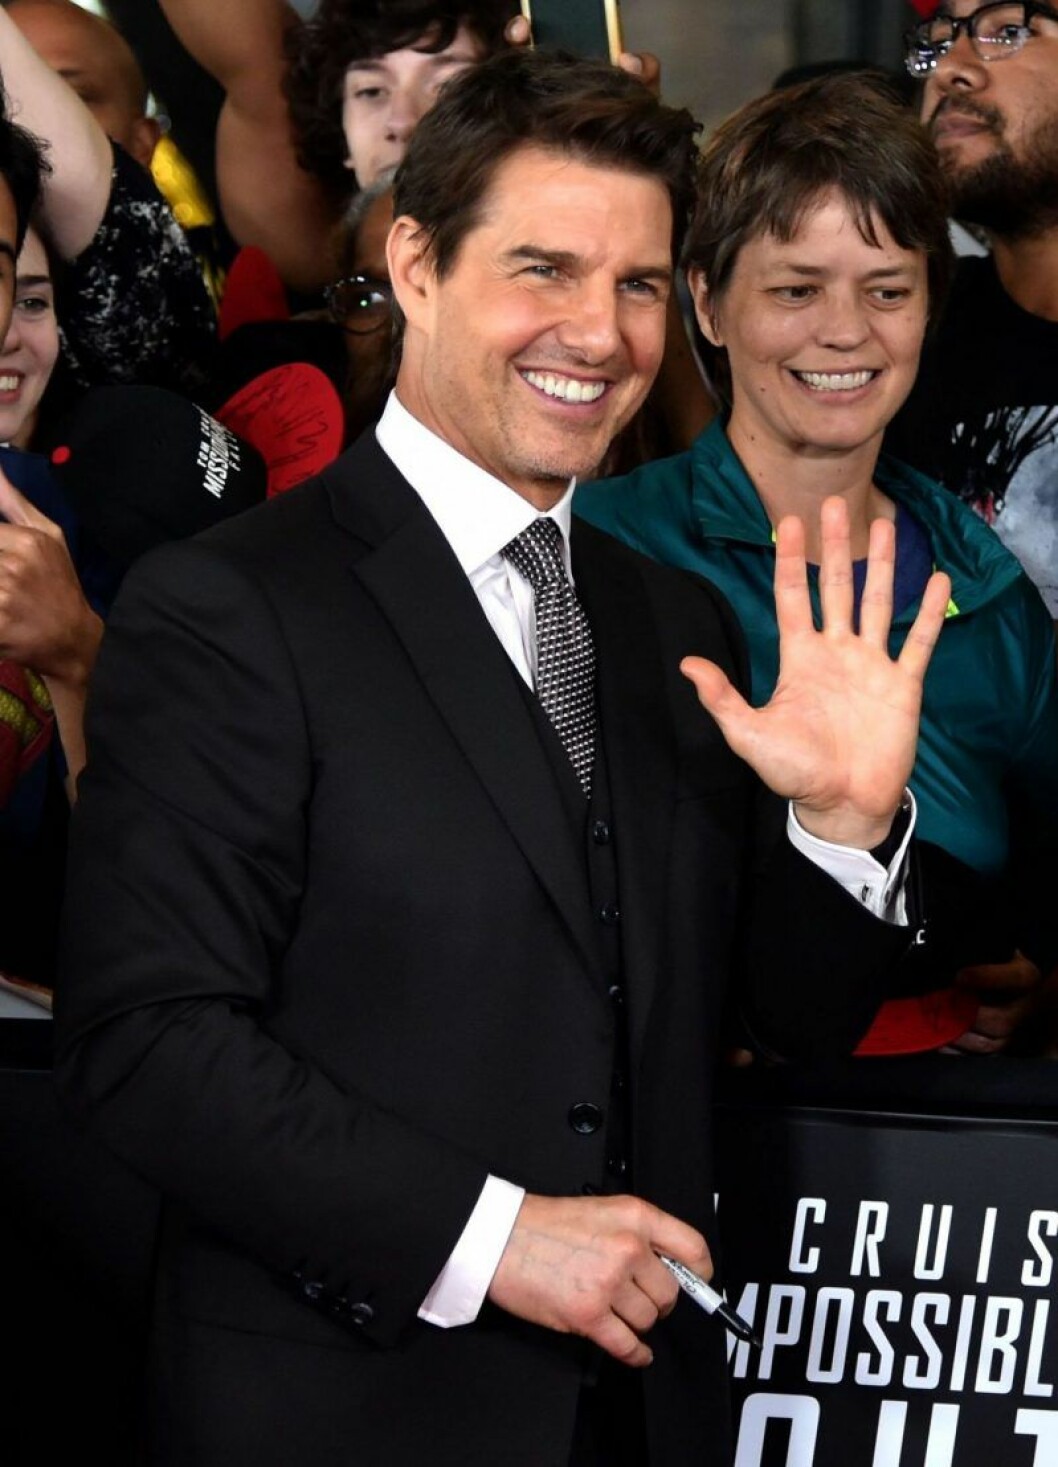 Tom Cruise vinkar